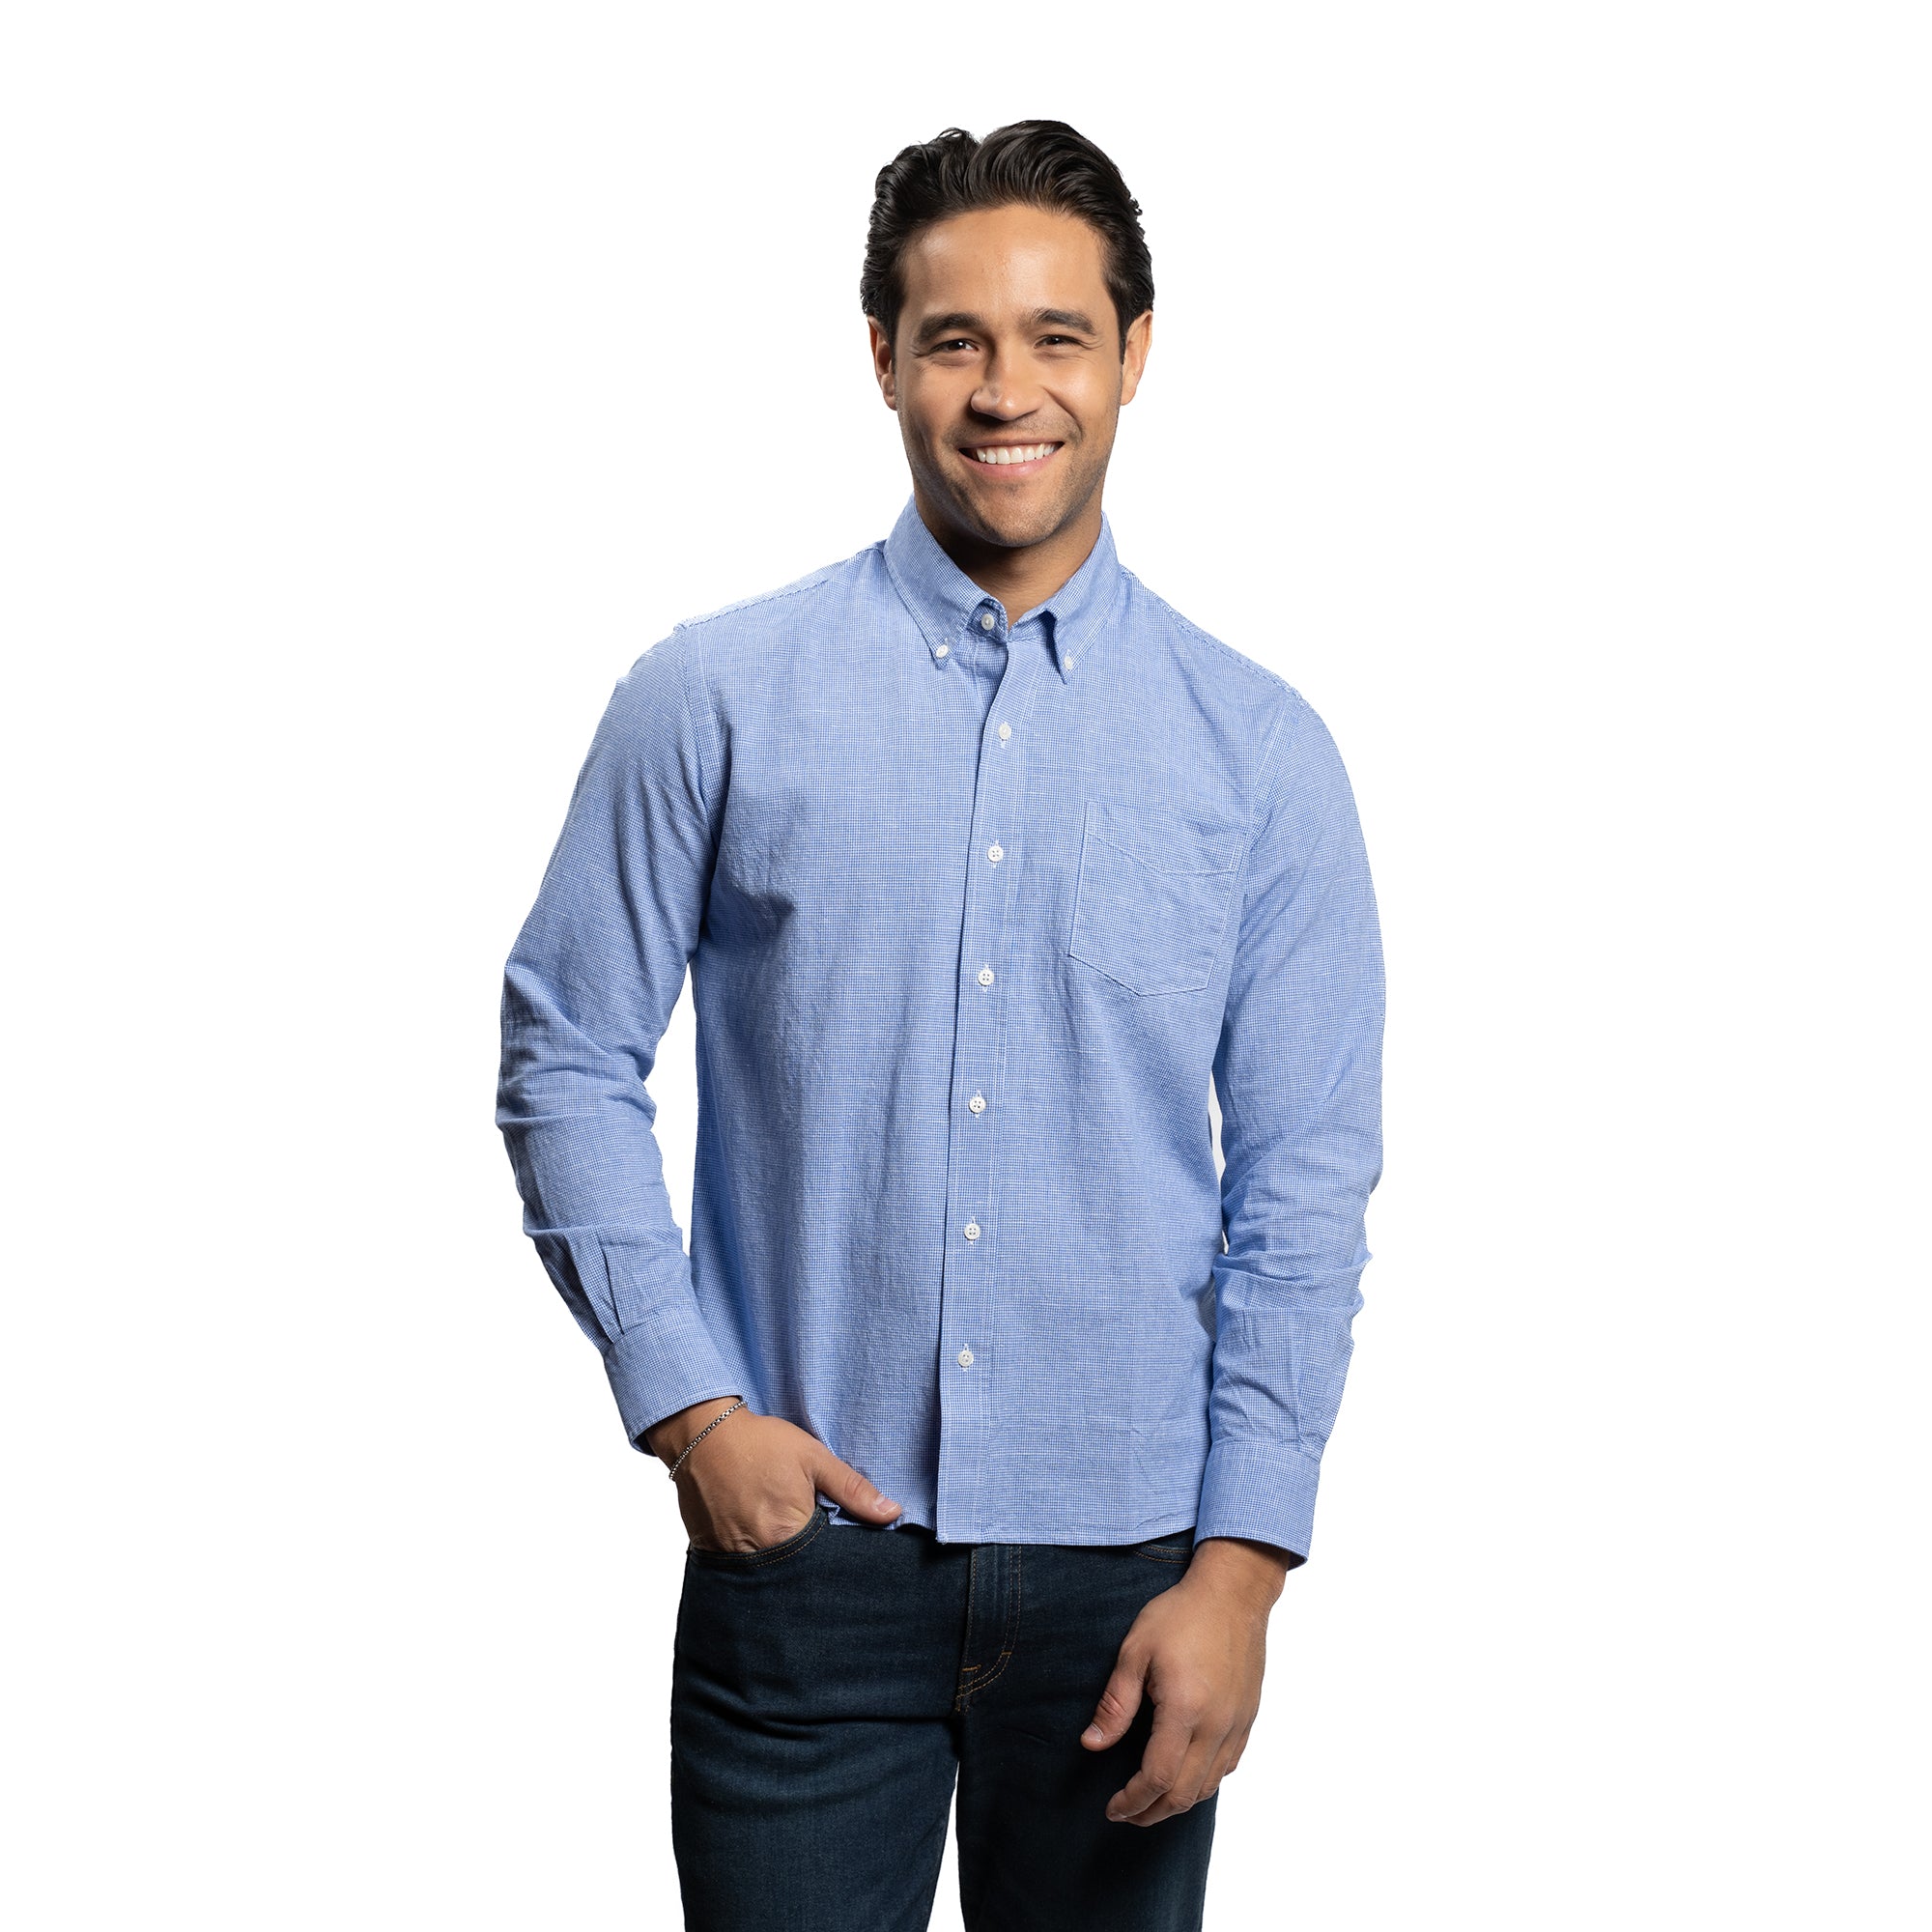 Weekend Linen Shirts - Blue Microcheck